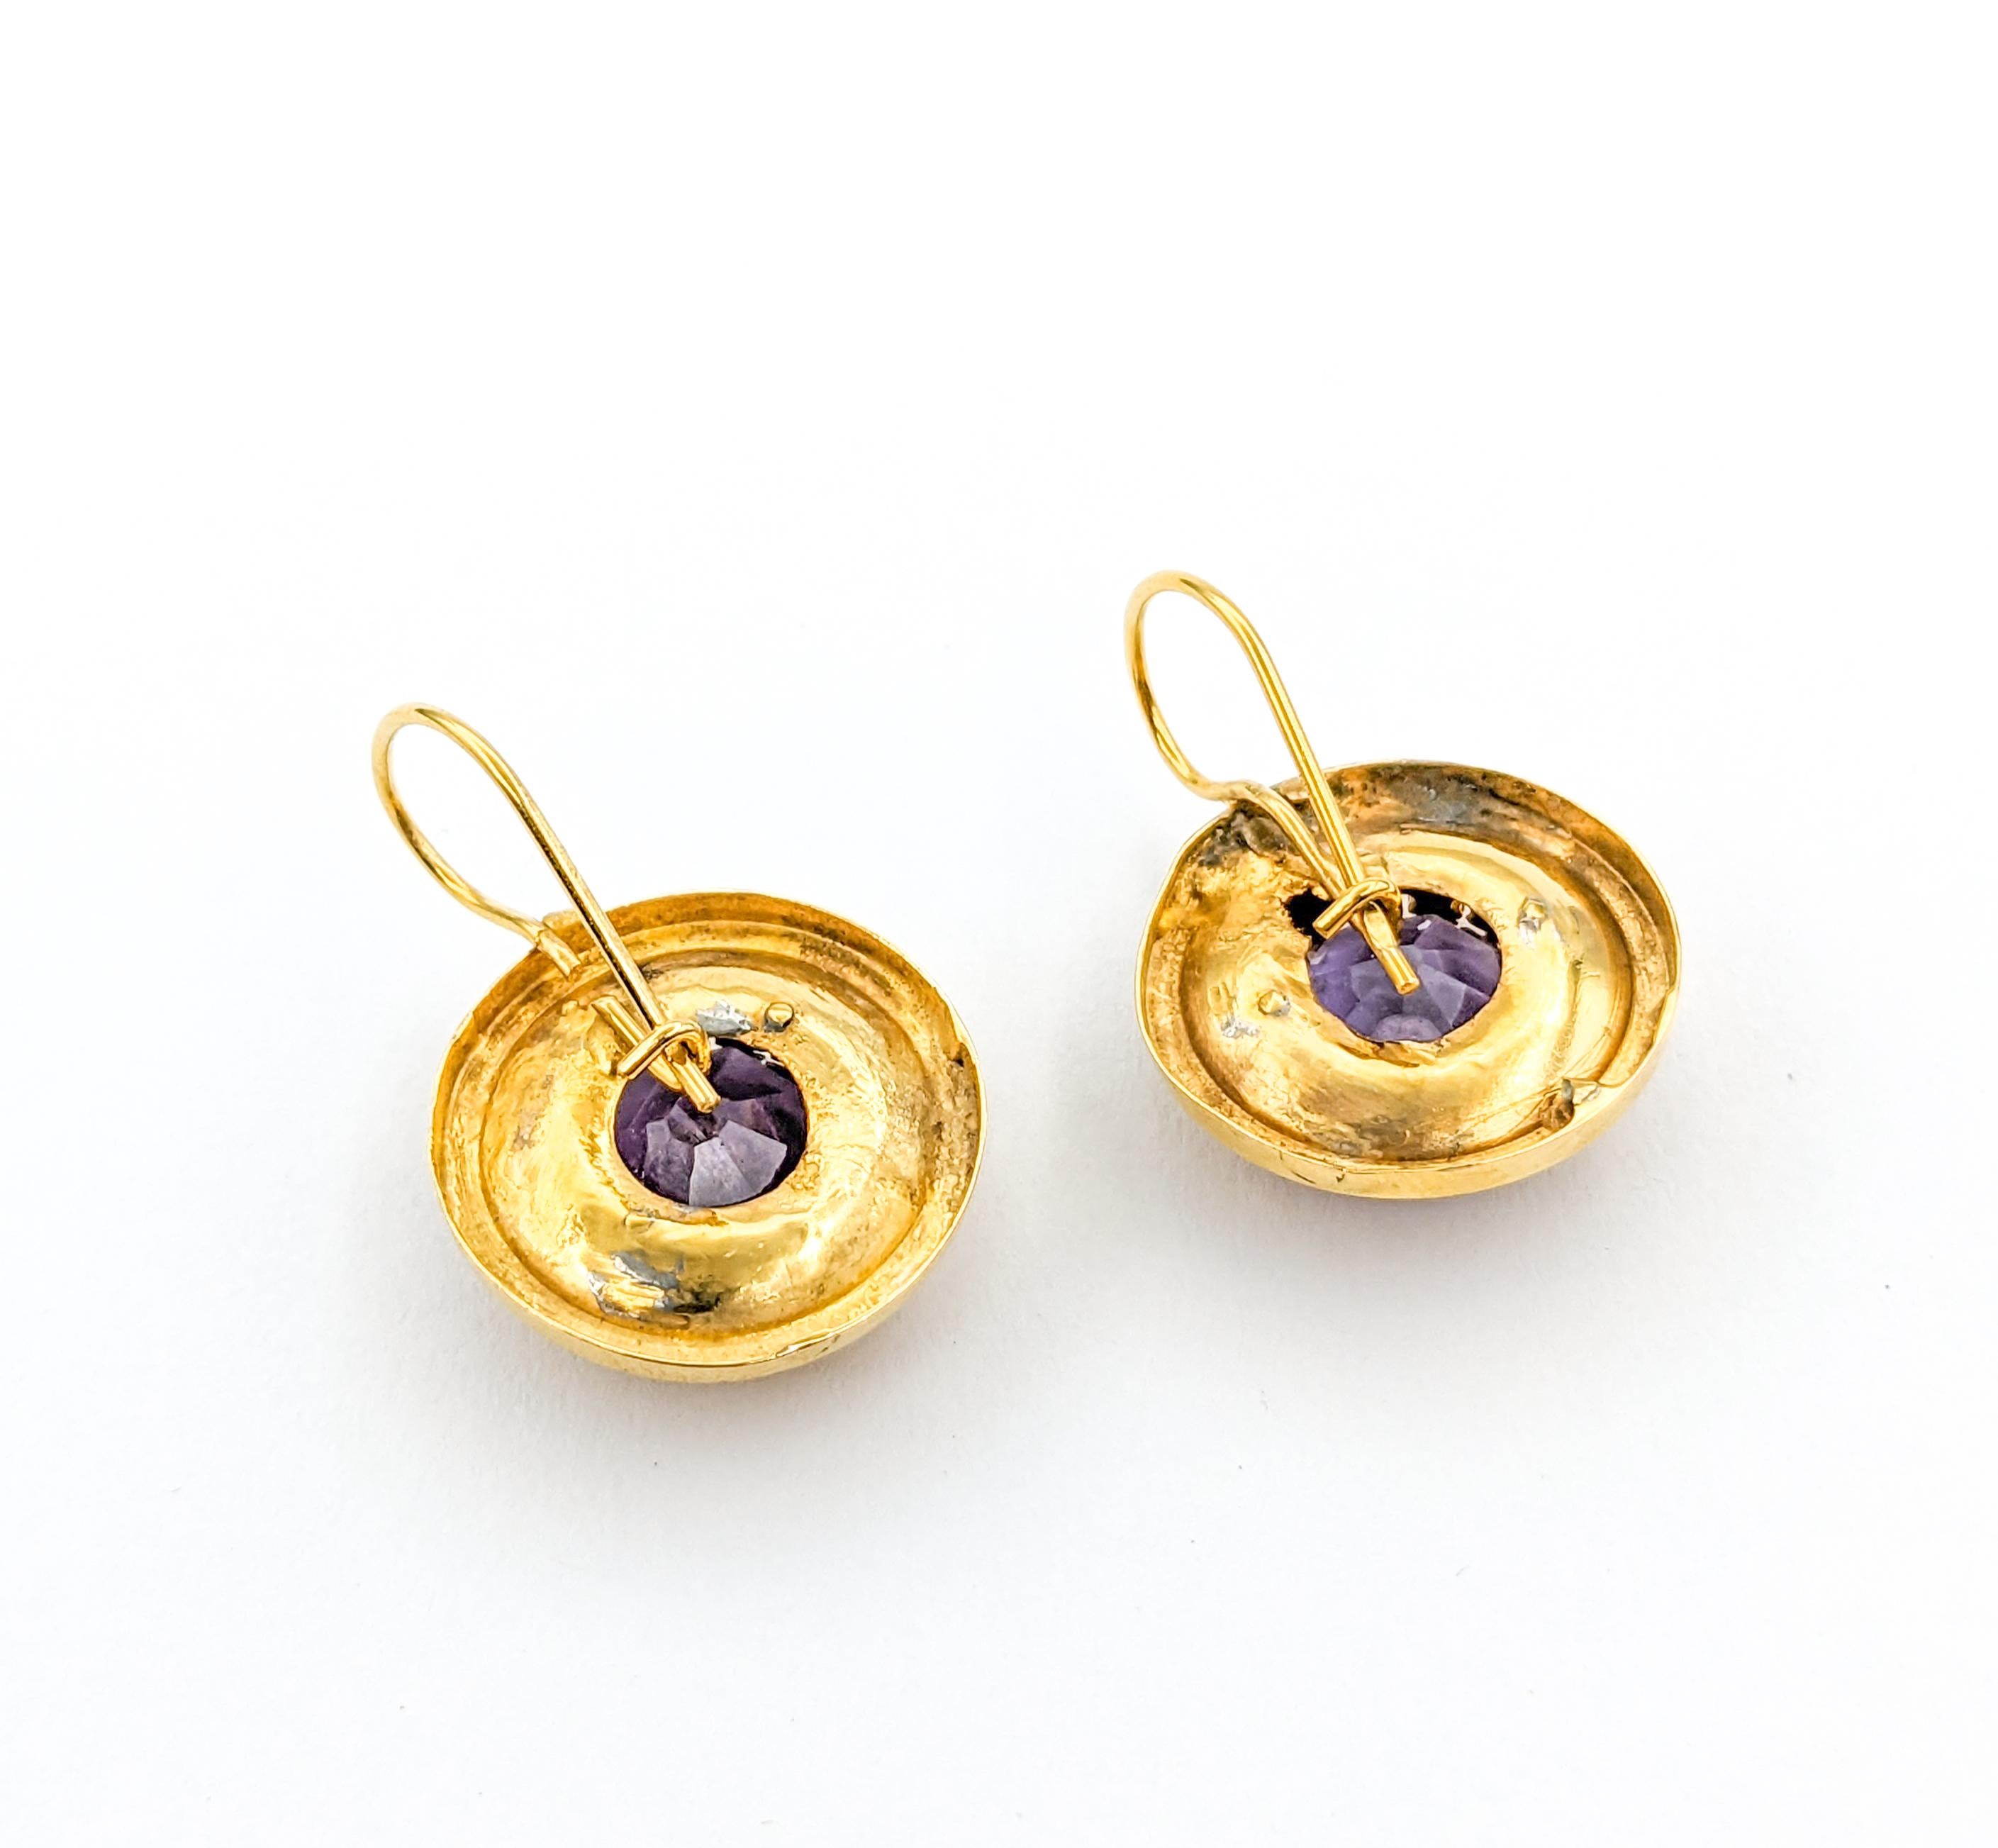 Romantic Diamond & Amethyst Drop Earrings in Yellow Gold For Sale 2